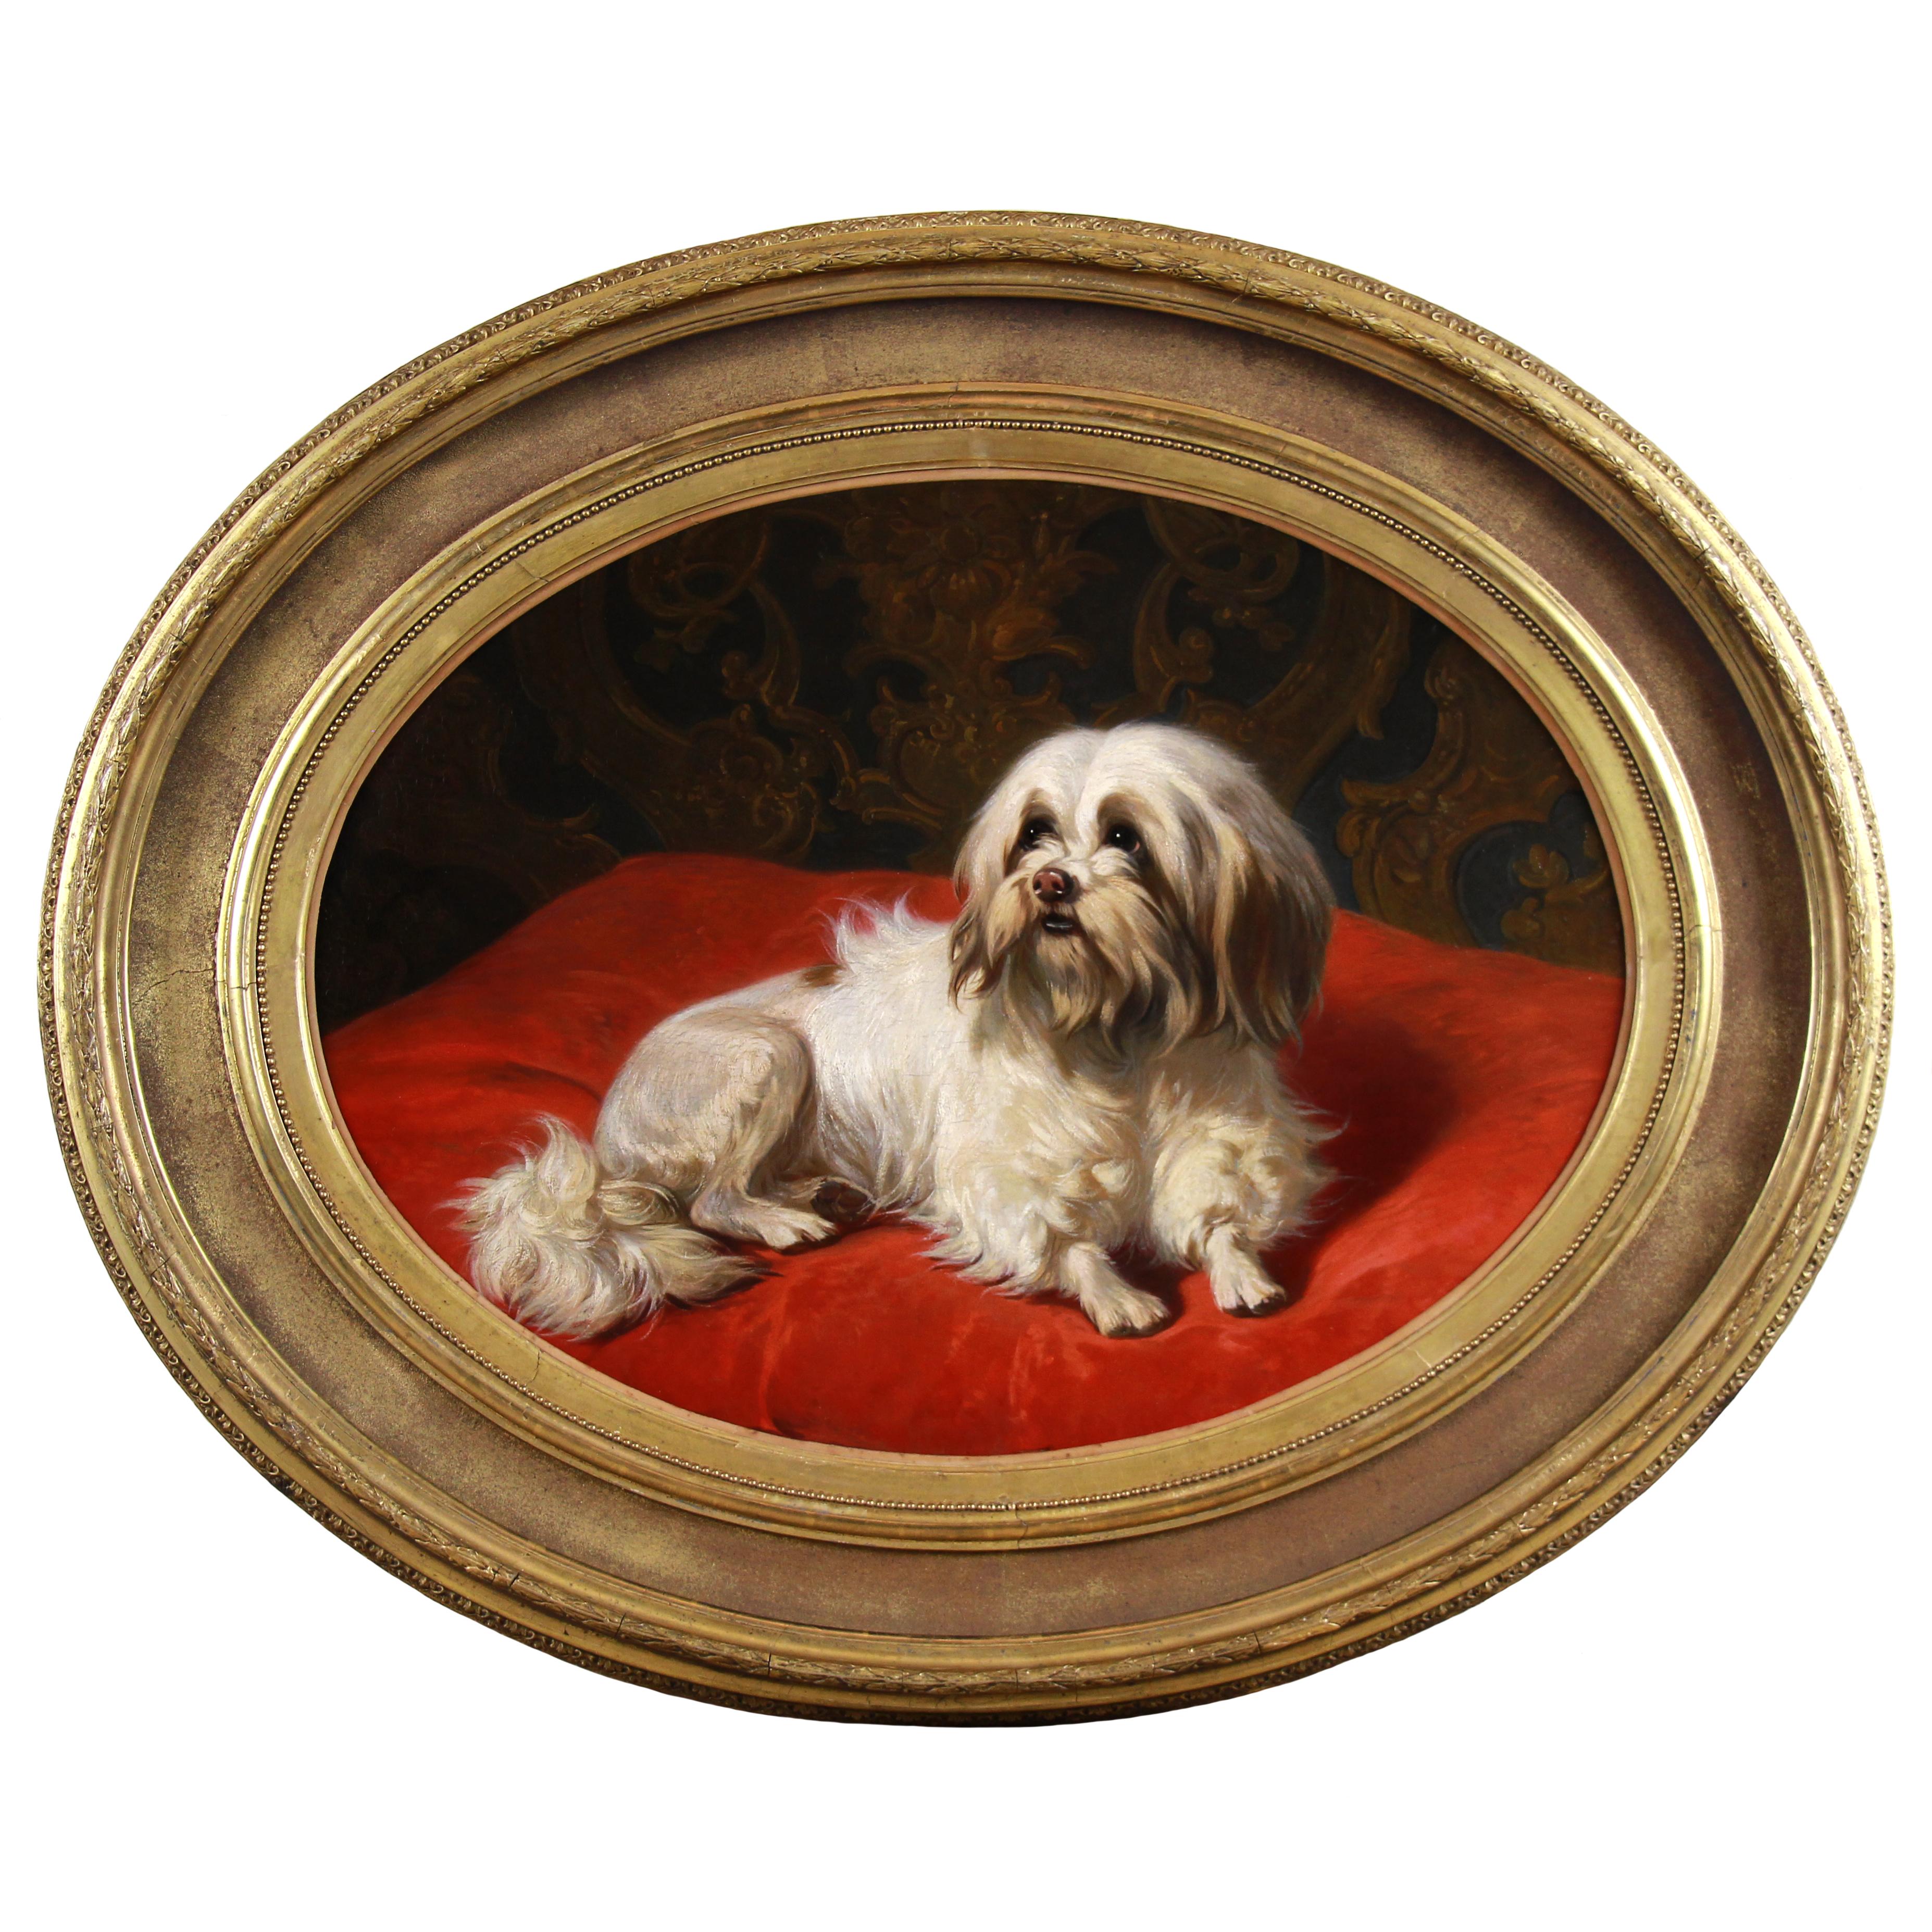 Animal Painting Conradijn Cunaueus - Huile sur panneau, portrait d'un chien maltais par Conradijn Cunaeus 19ème